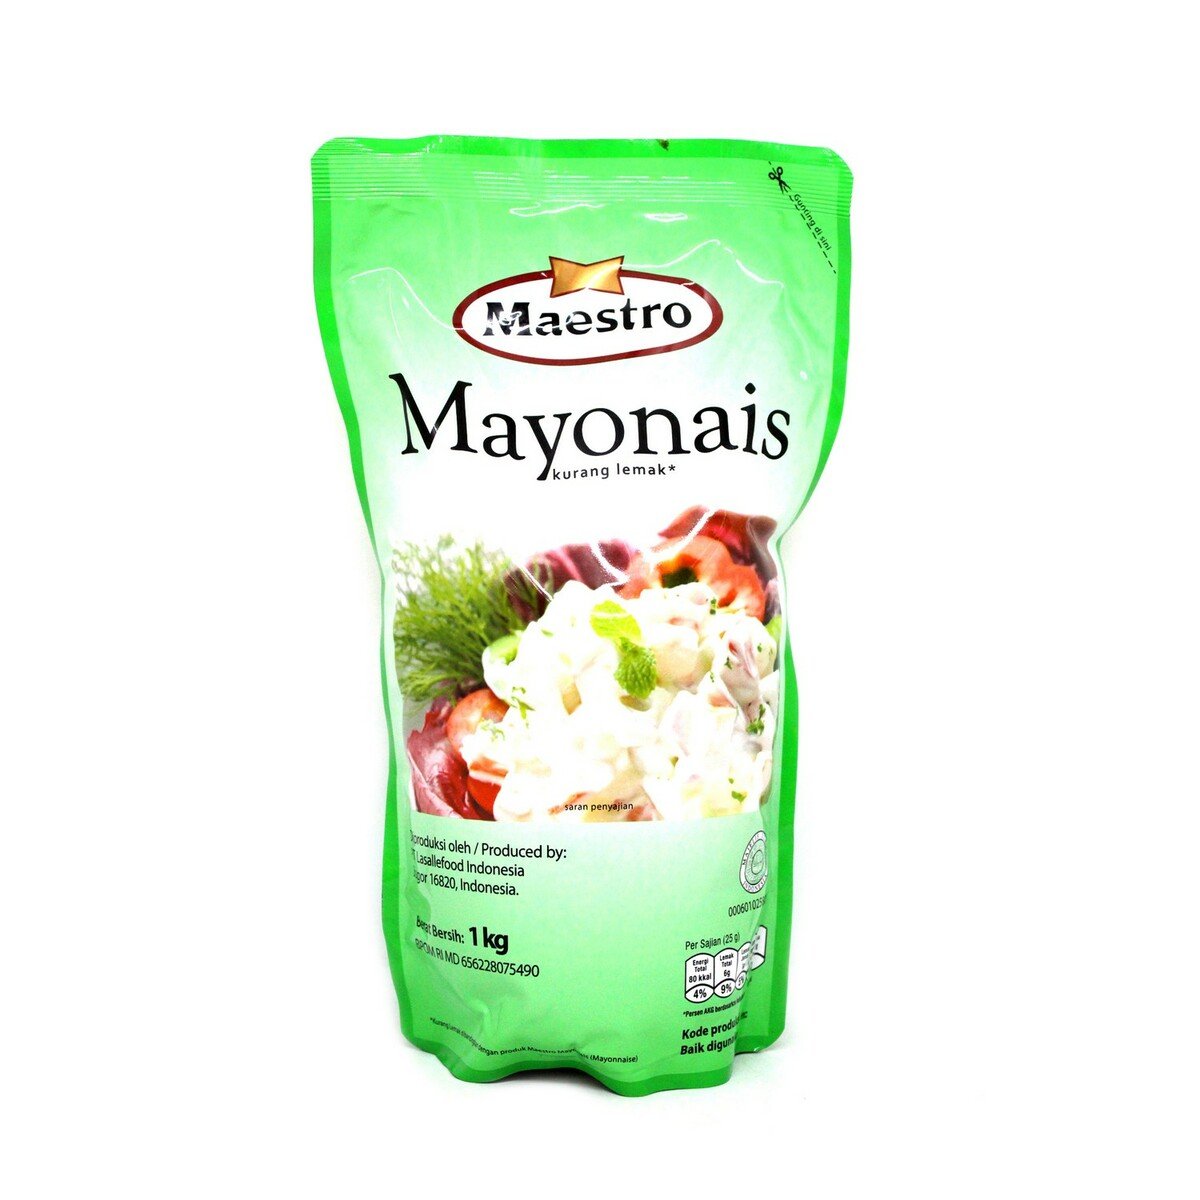 Maestro Mayonais 1kg